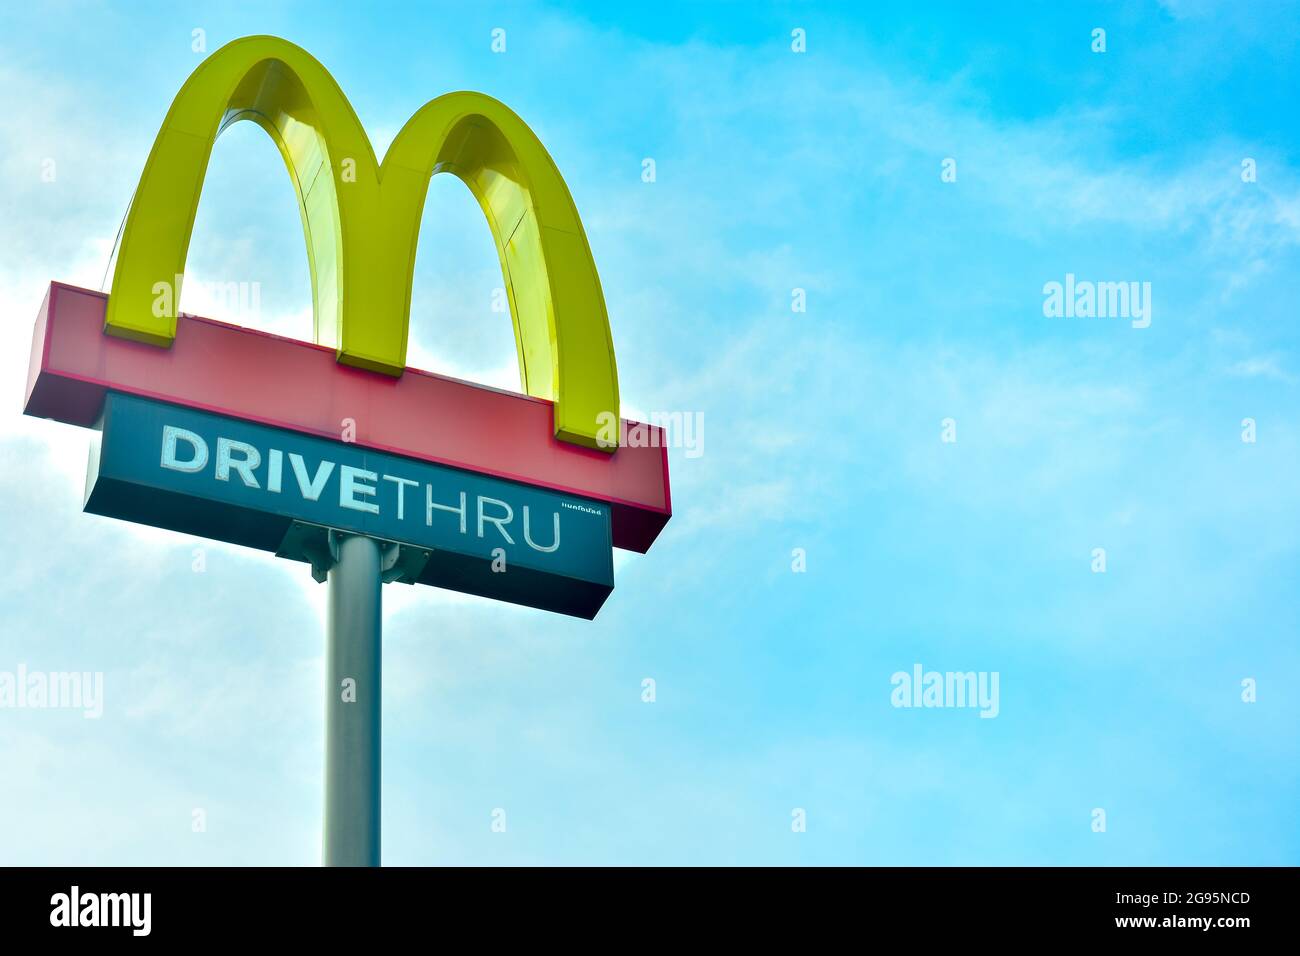 Chachoengsao, Thaïlande – 8 juillet 2021 : Mc Donald's Restaurant Drive signe vrai sur ciel bleu. McDonald's est une chaîne de restauration rapide américaine très popu Banque D'Images